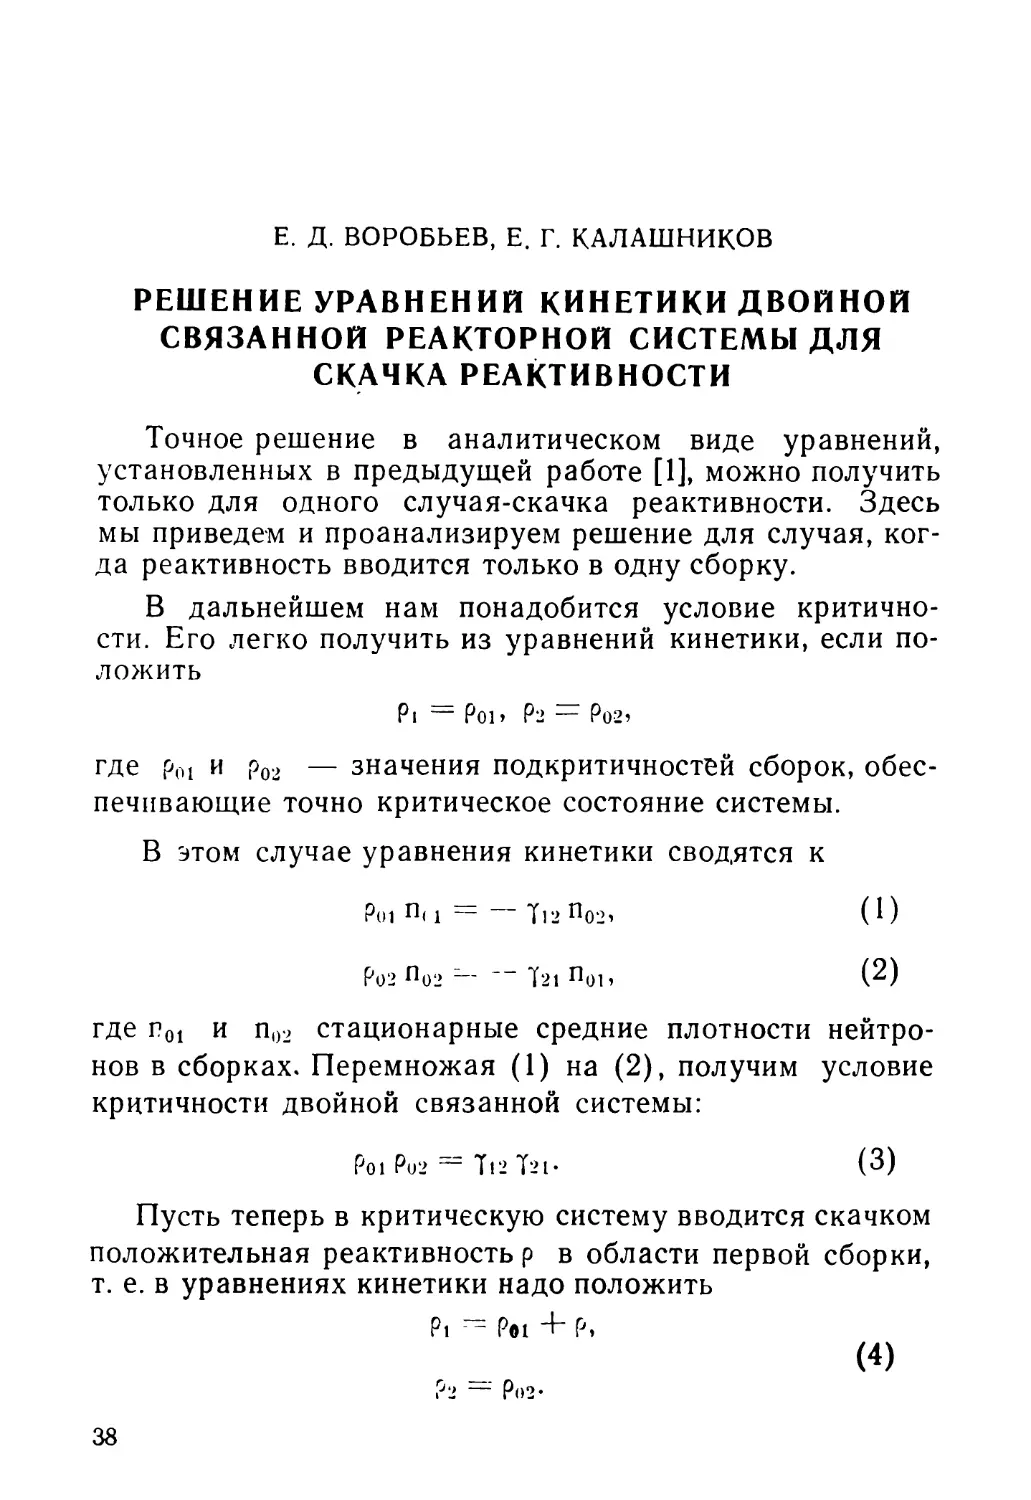 Е. Д. Воробьев, Е. Г. Калашников. Решение уравнений кинетики двойной связанной реакторной системы для скачка реактивности